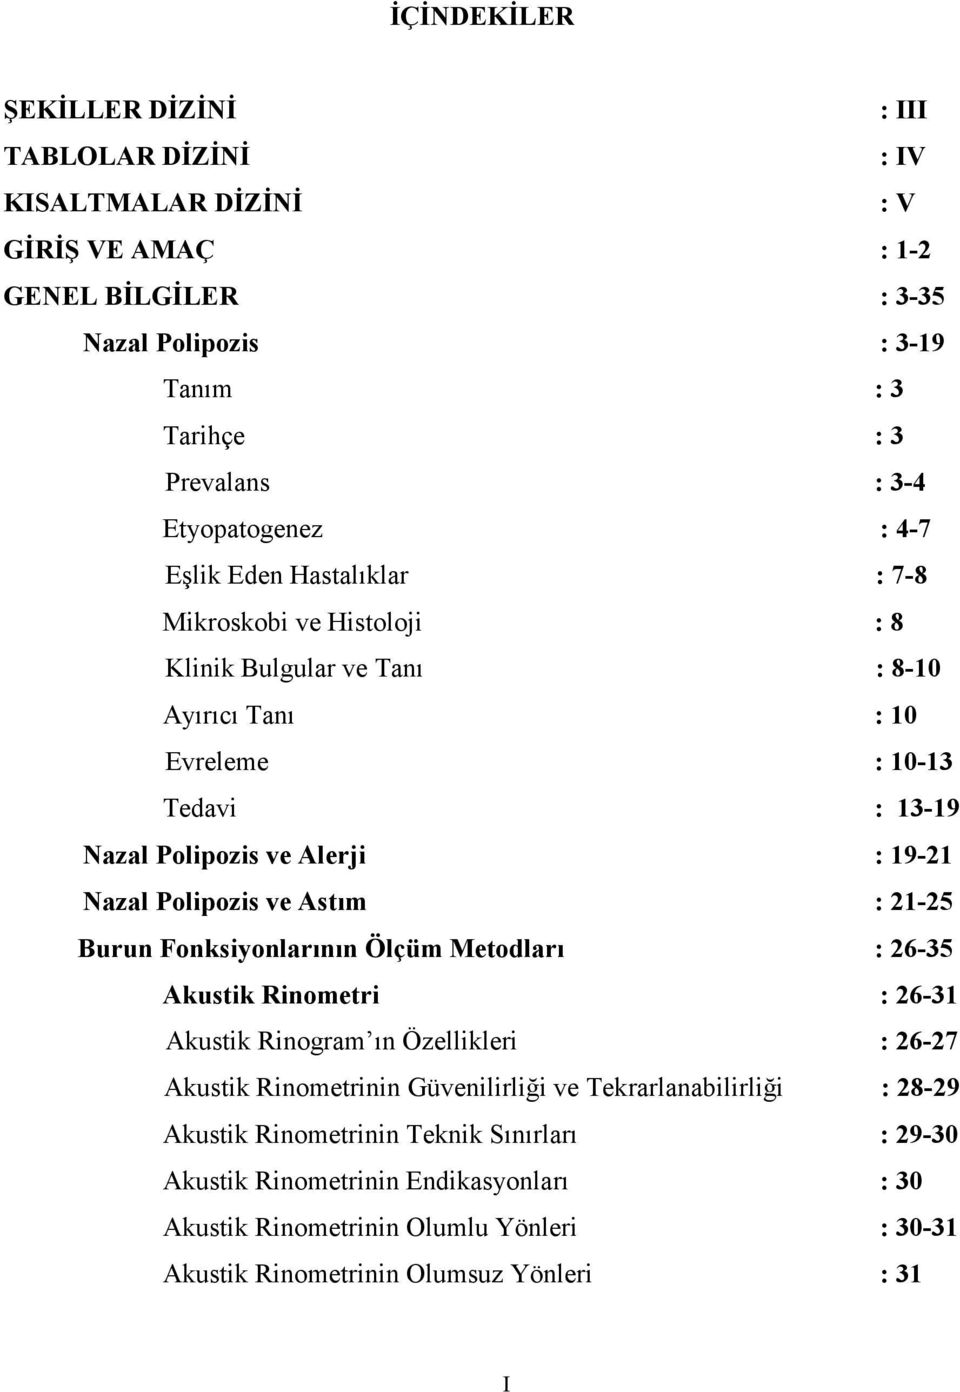 19-21 Nazal Polipozis ve Astım : 21-25 Burun Fonksiyonlarının Ölçüm Metodları : 26-35 Akustik Rinometri : 26-31 Akustik Rinogram ın Özellikleri : 26-27 Akustik Rinometrinin Güvenilirliği ve